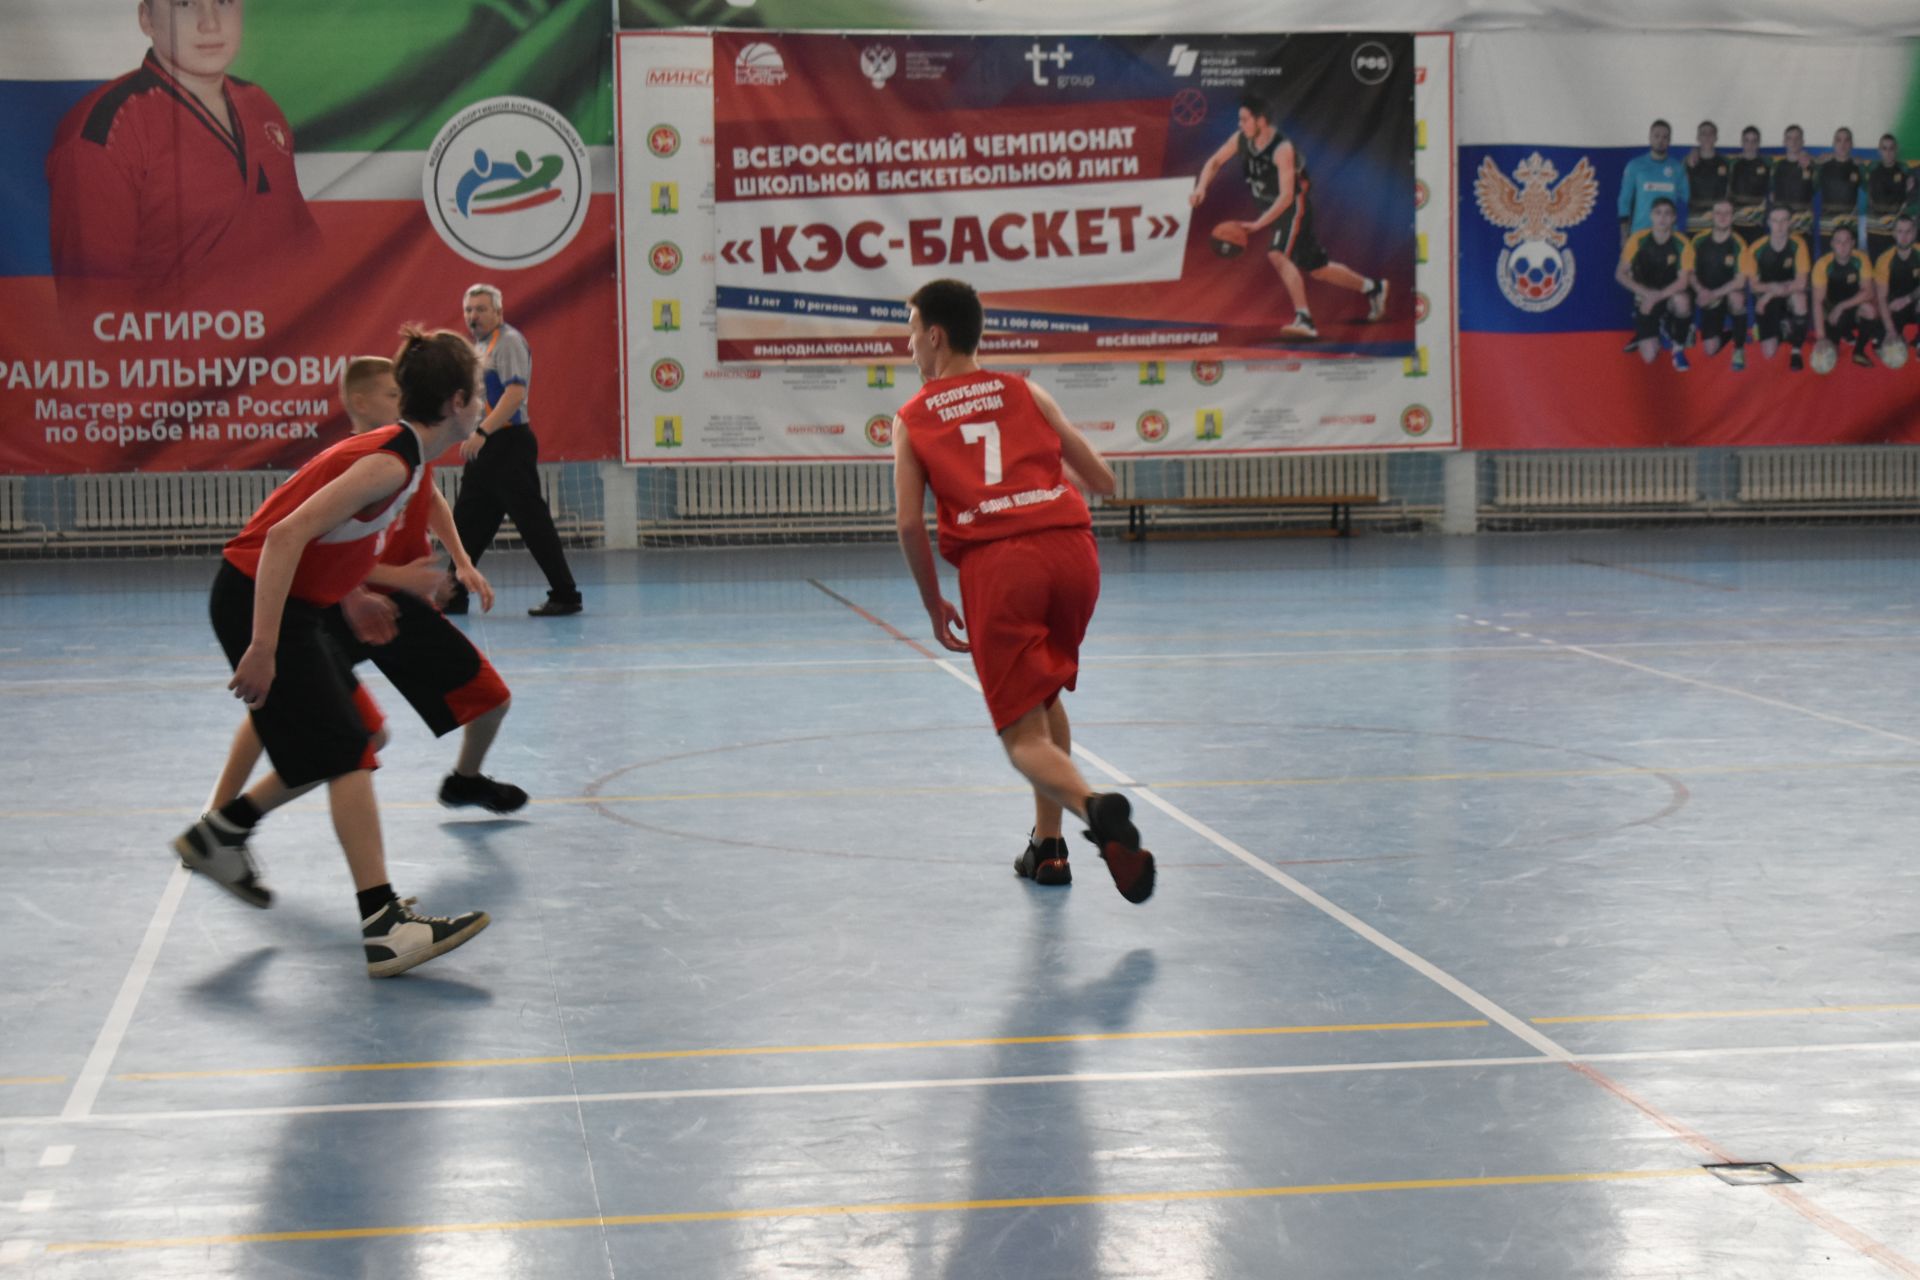 В Болгаре стартовал Чемпионат&nbsp; Школьной Баскетбольной Лиги "КЭС-БАСКЕТ" РТ